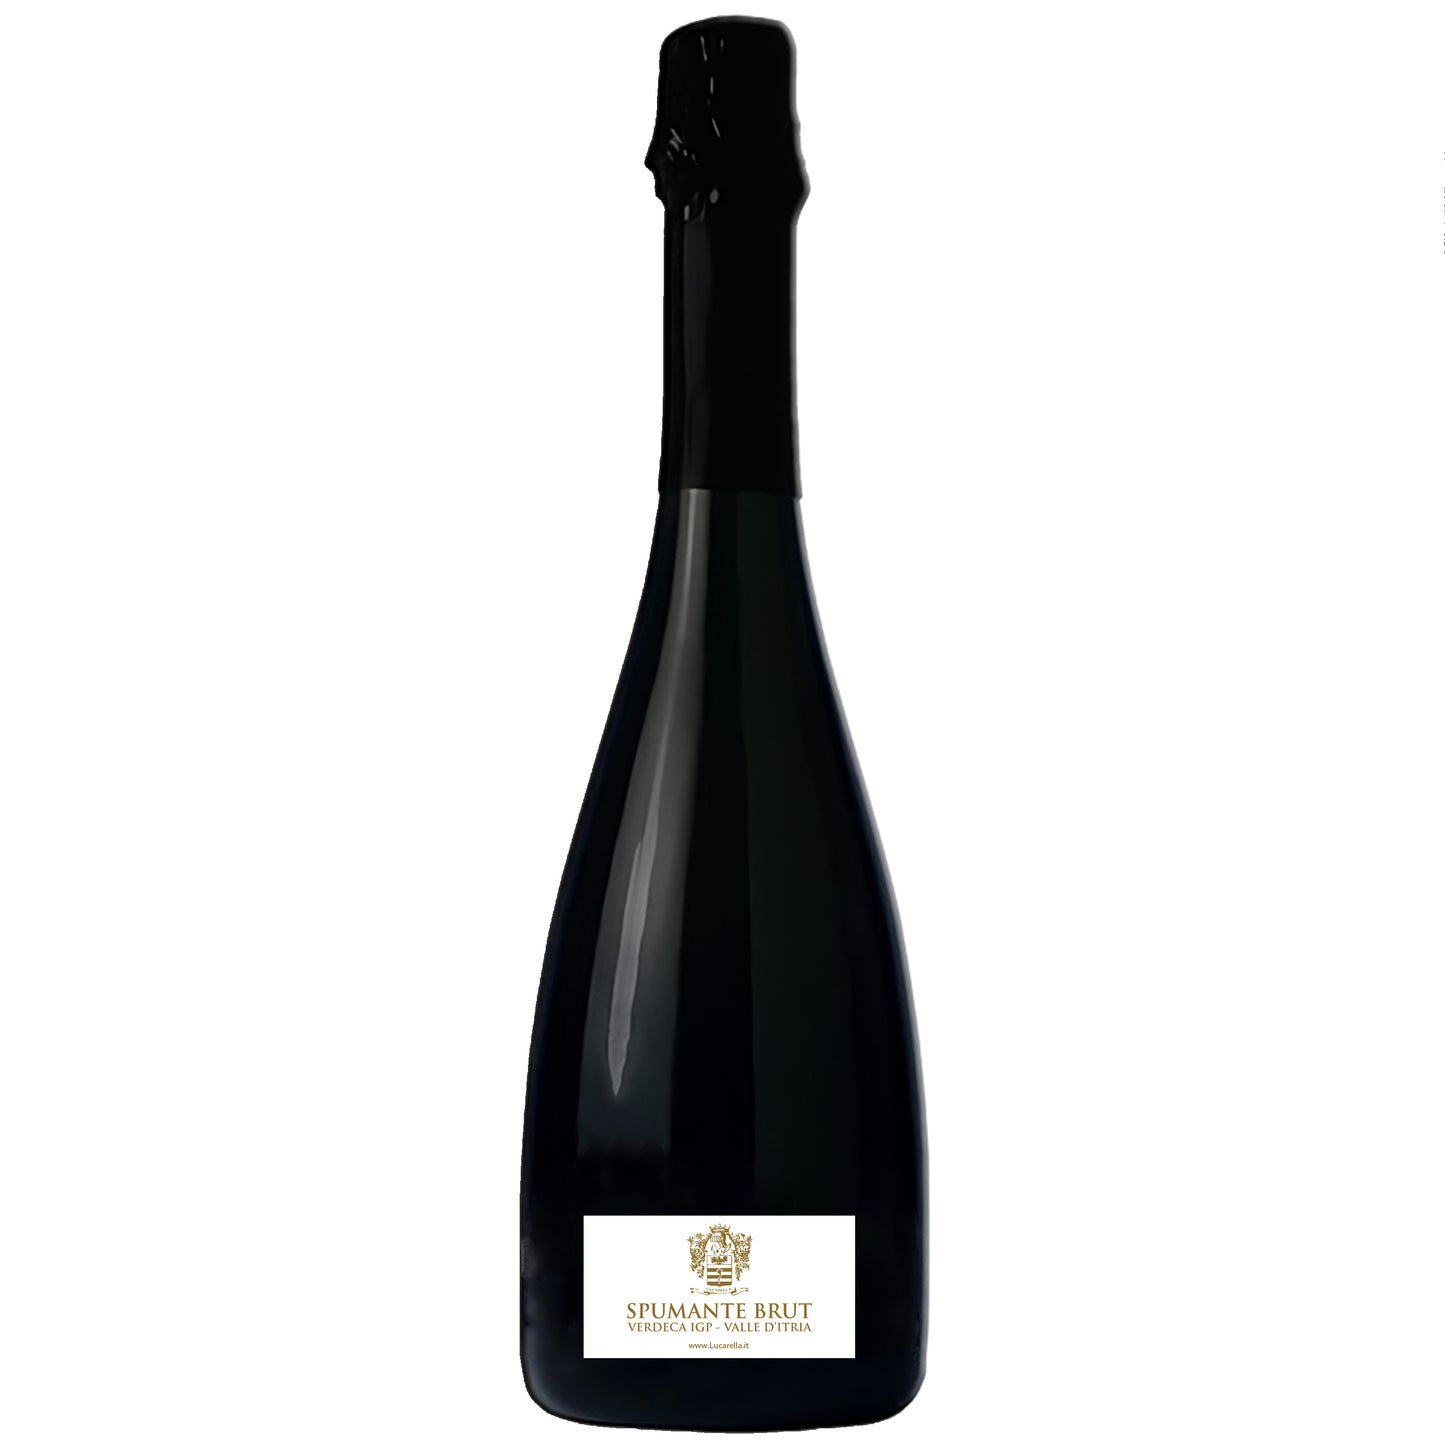 Brut Verdeca PGI sparkling wine from Valle d'Itria